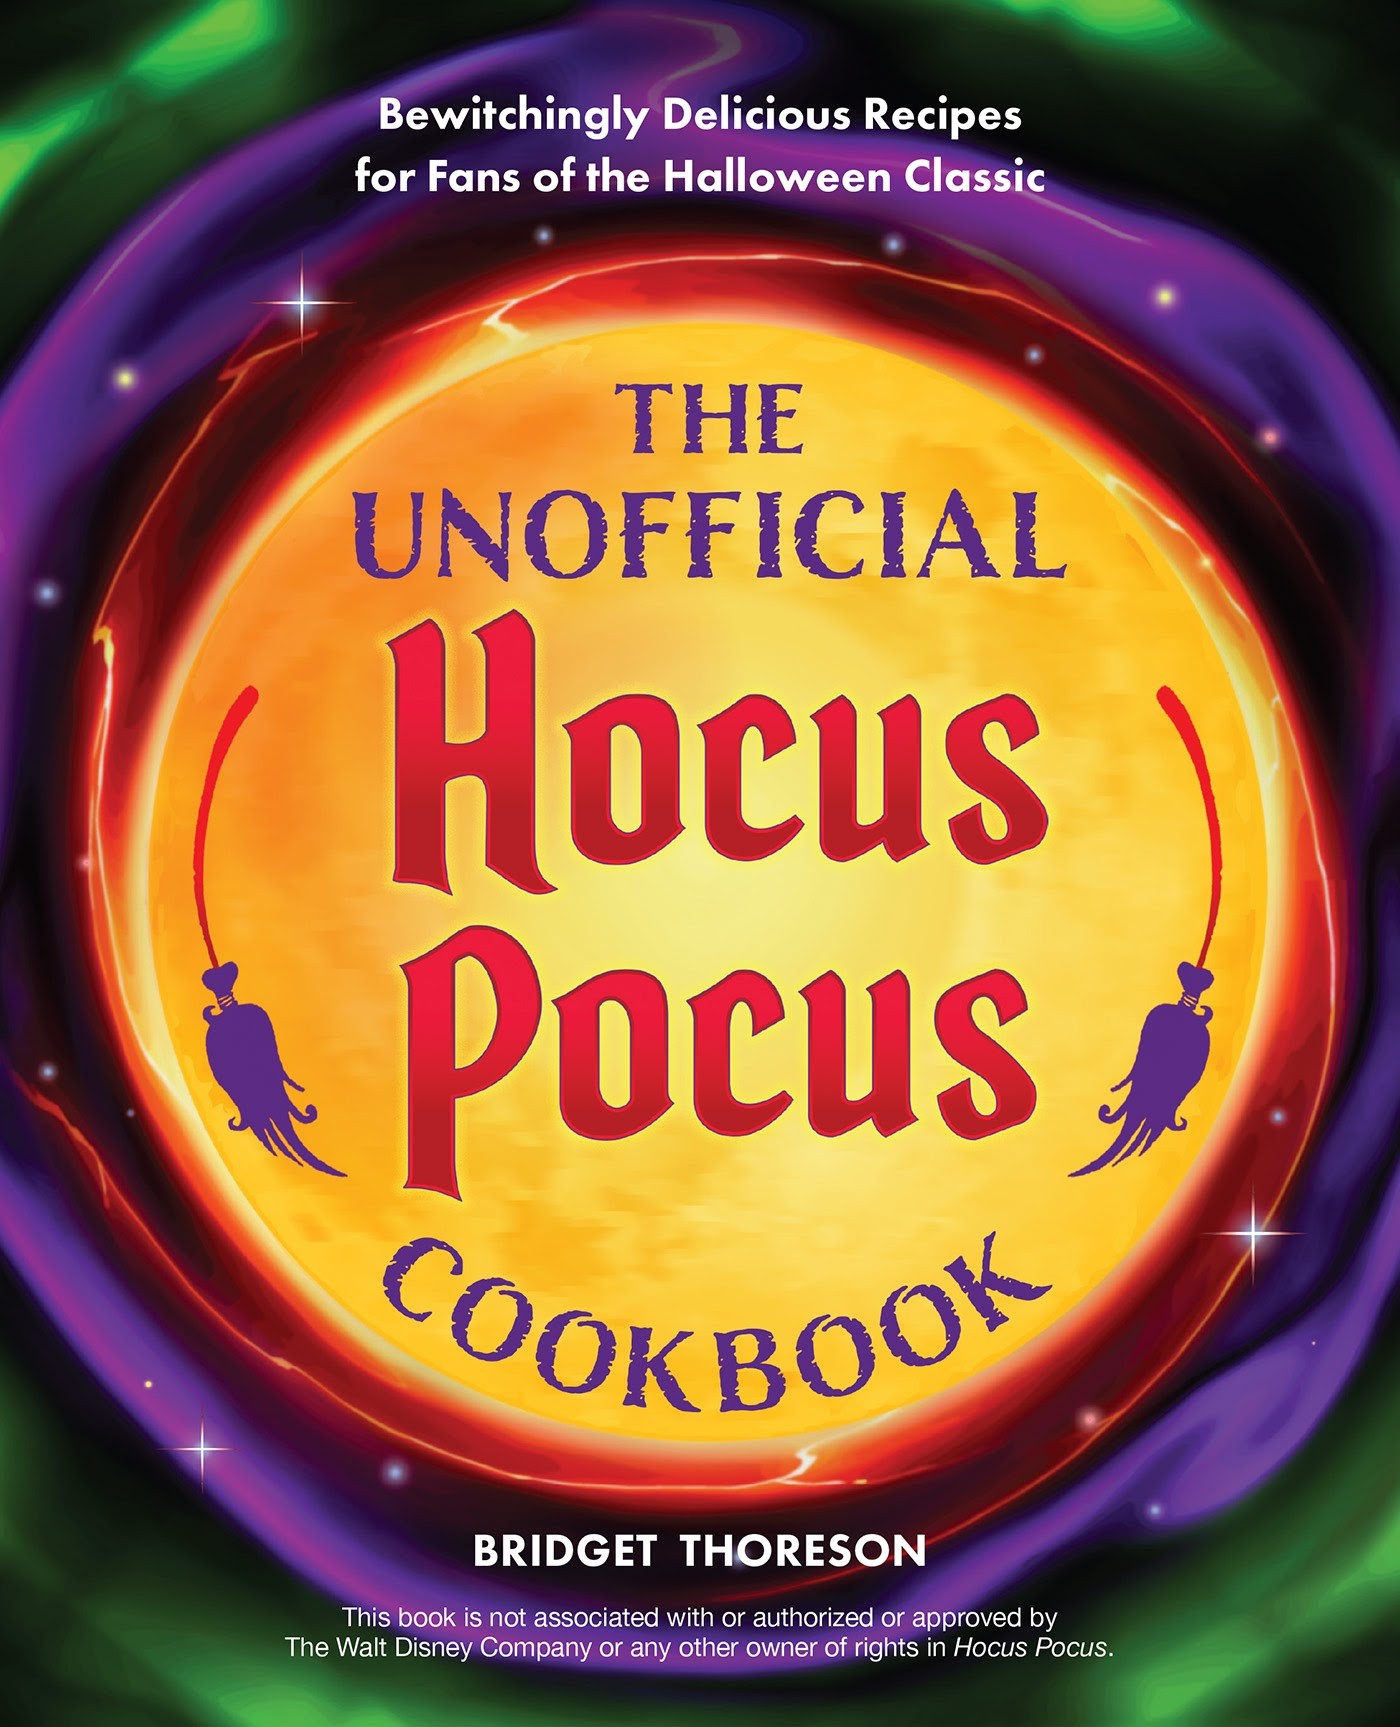 ~The Unofficial Hocus Pocus Cookbook!